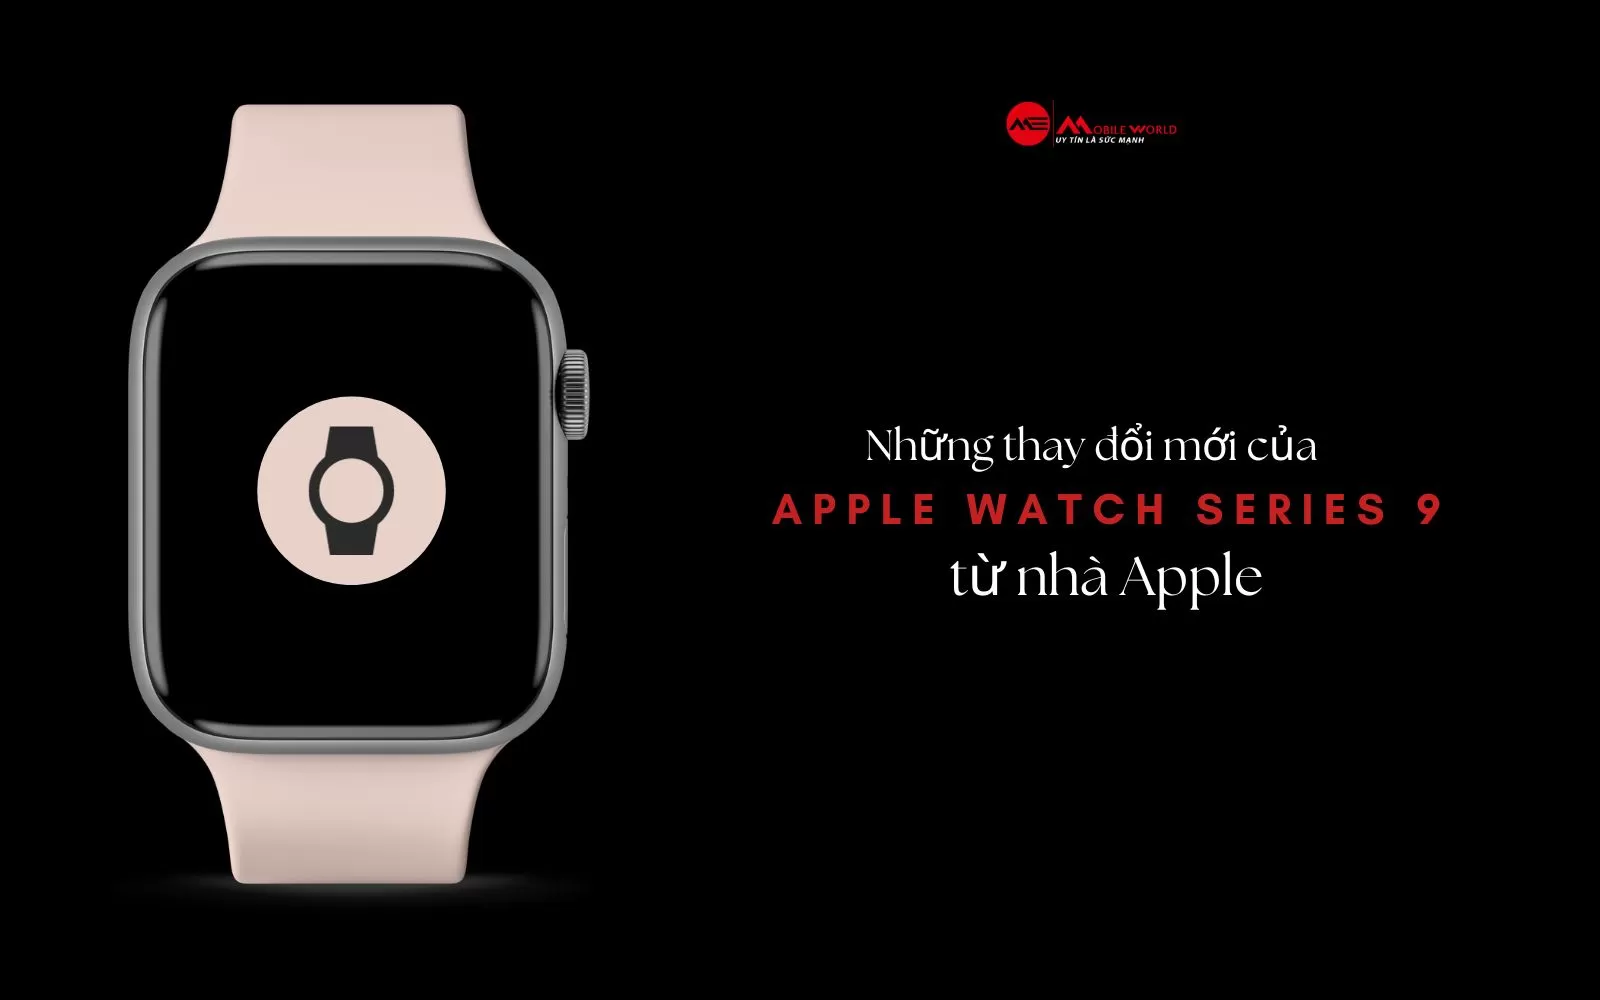 Những thay đổi mới của Apple Watch Series 9 từ nhà Apple